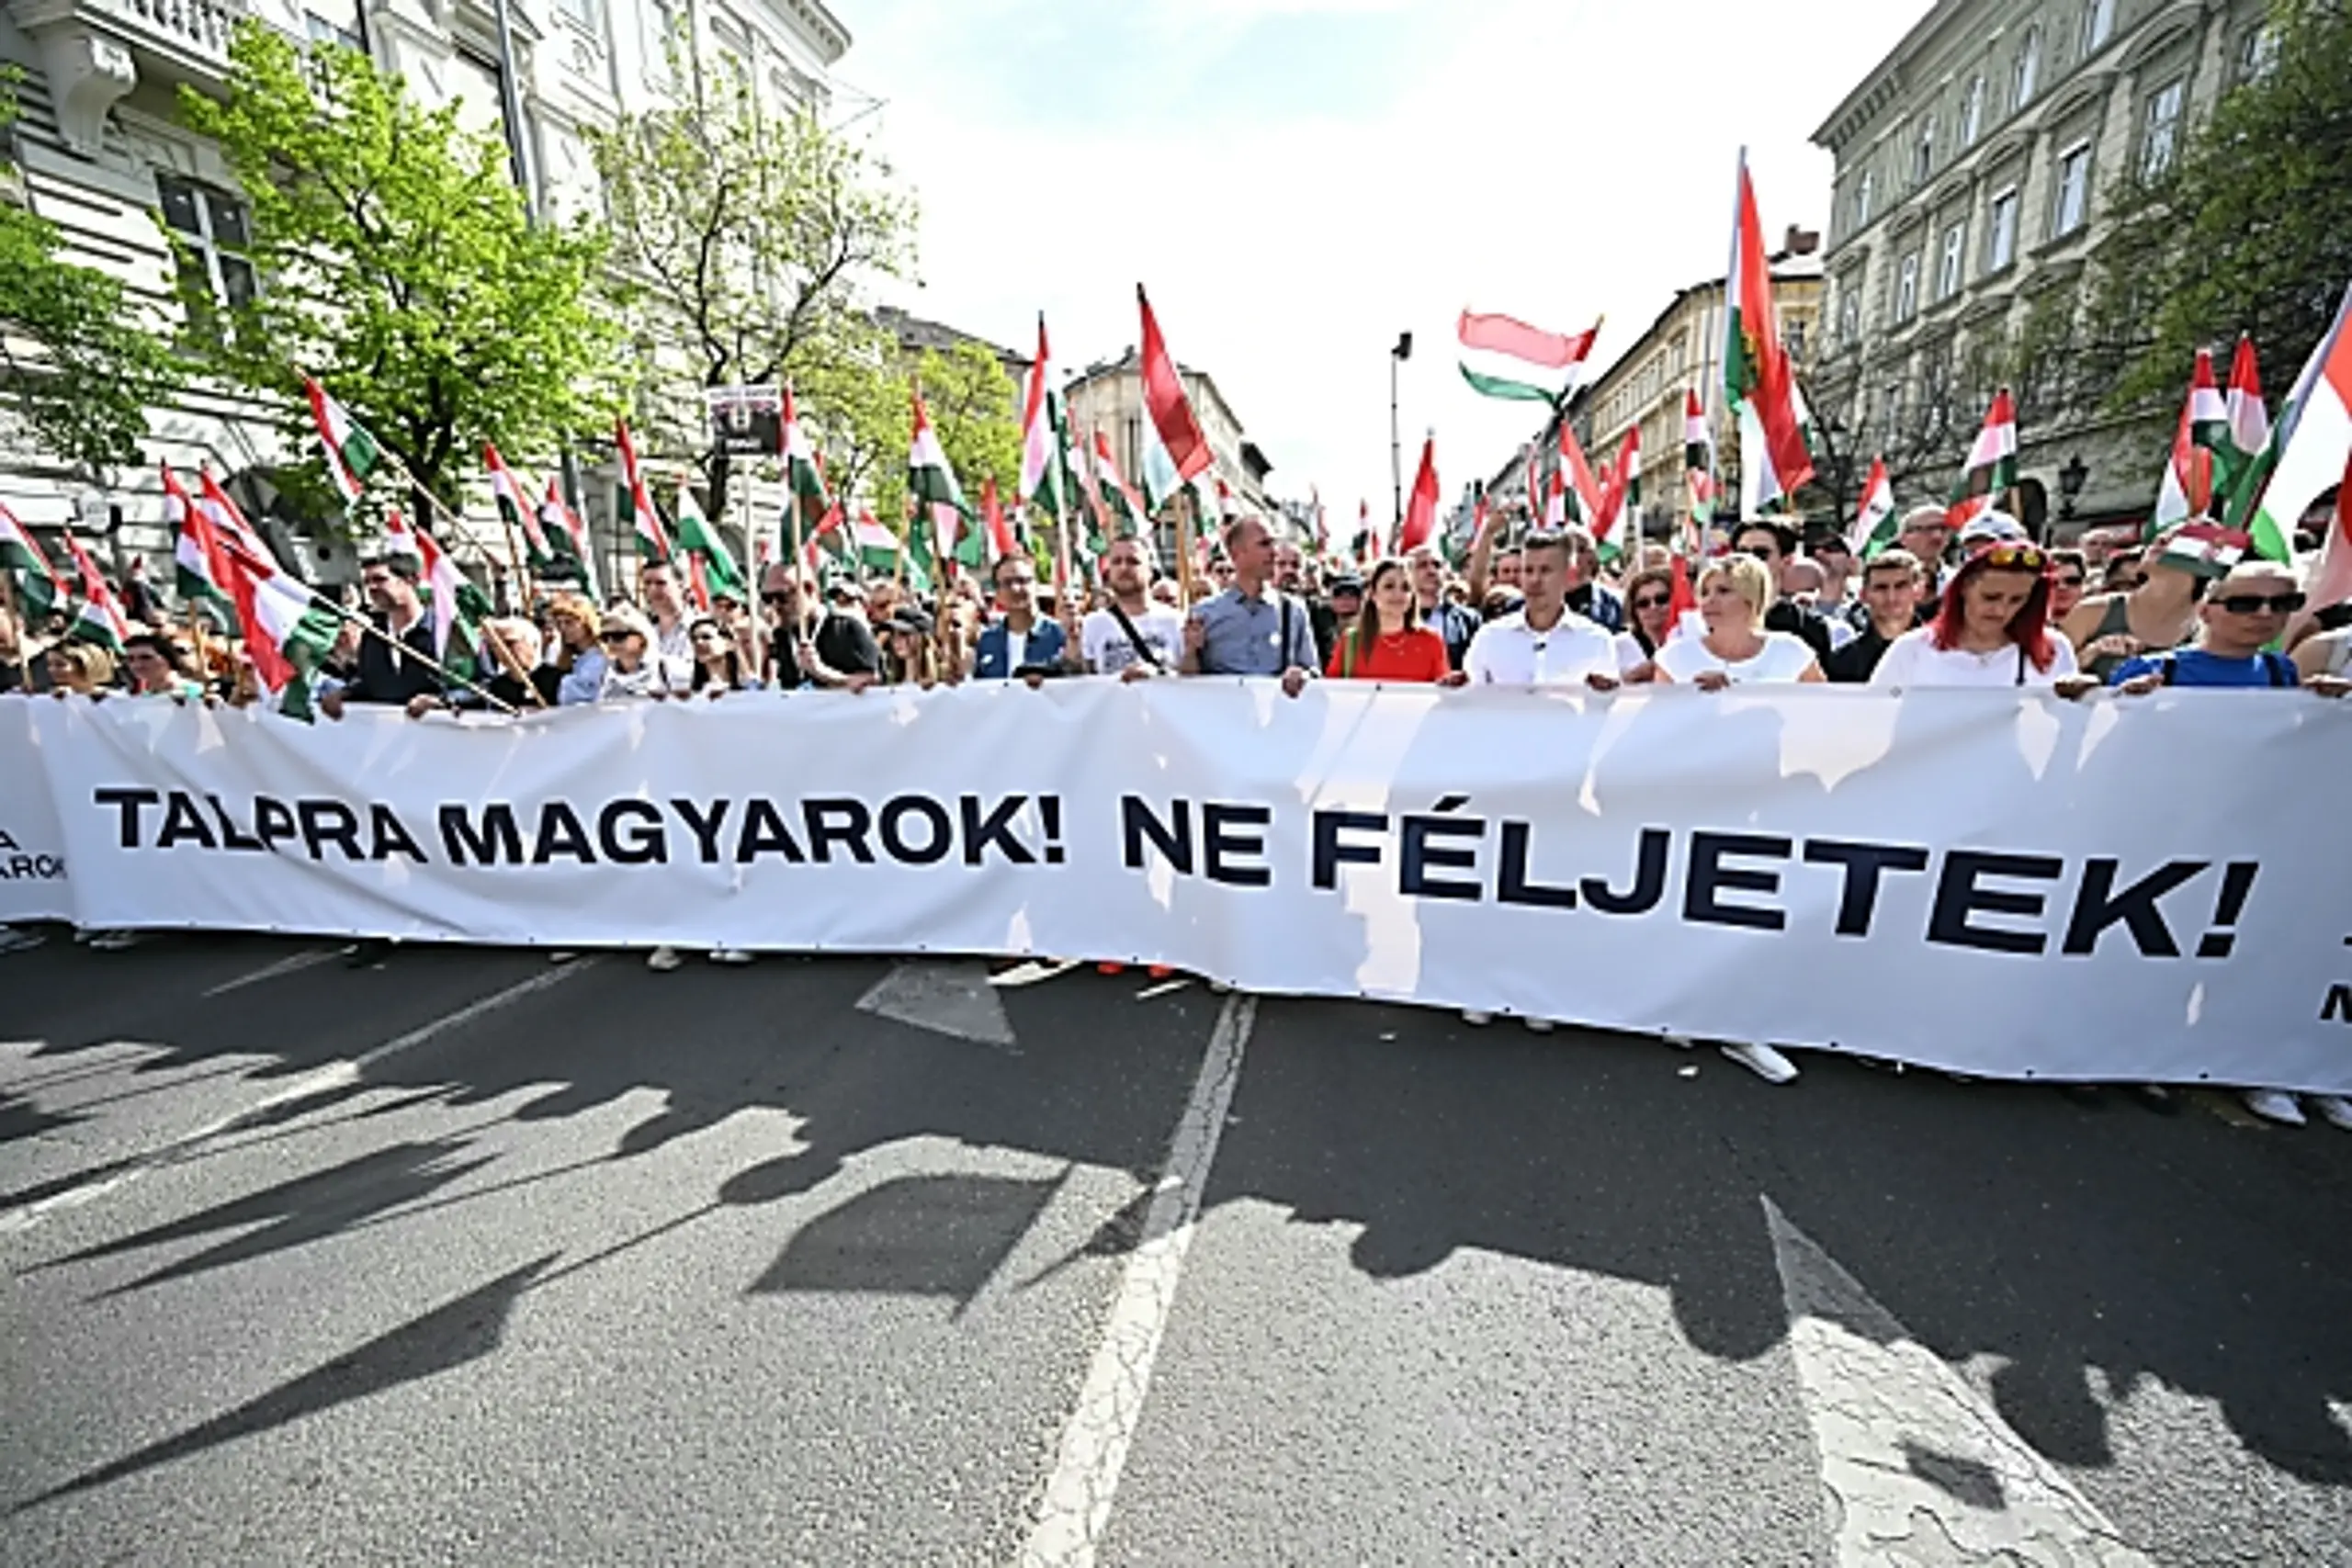 "Nationaler Marsch für ein neues Ungarn"